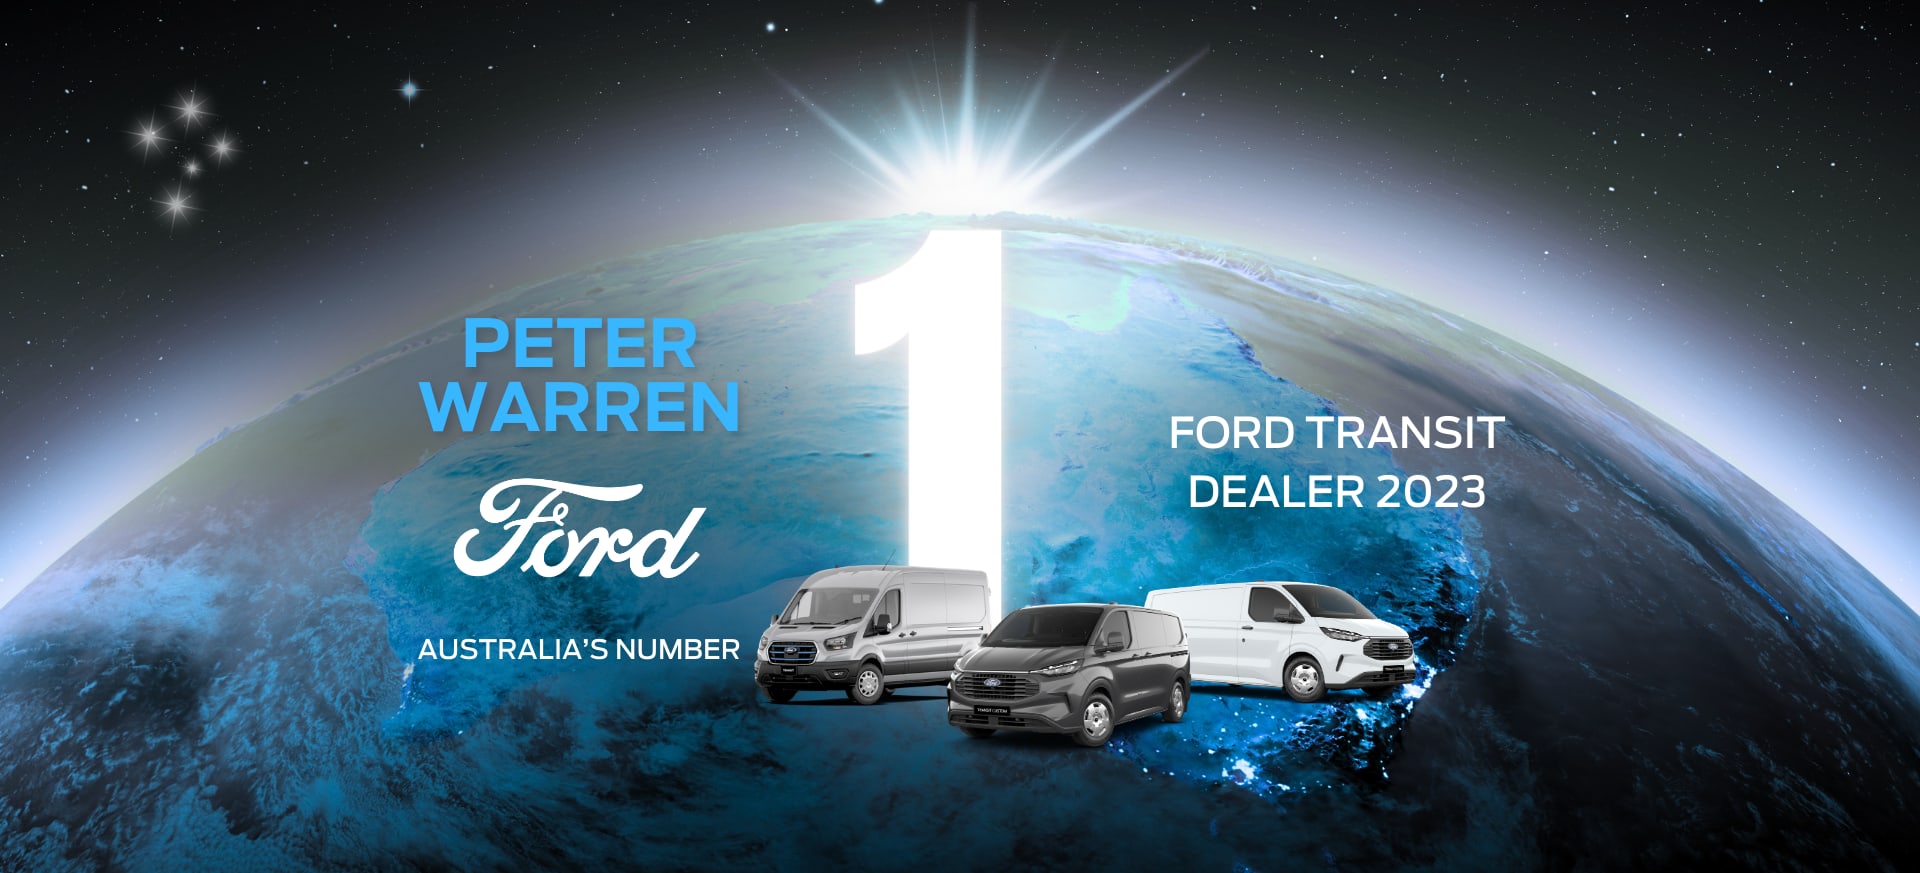 Peter Warren Ford Australia's Number 1 Transit Dealer 2022